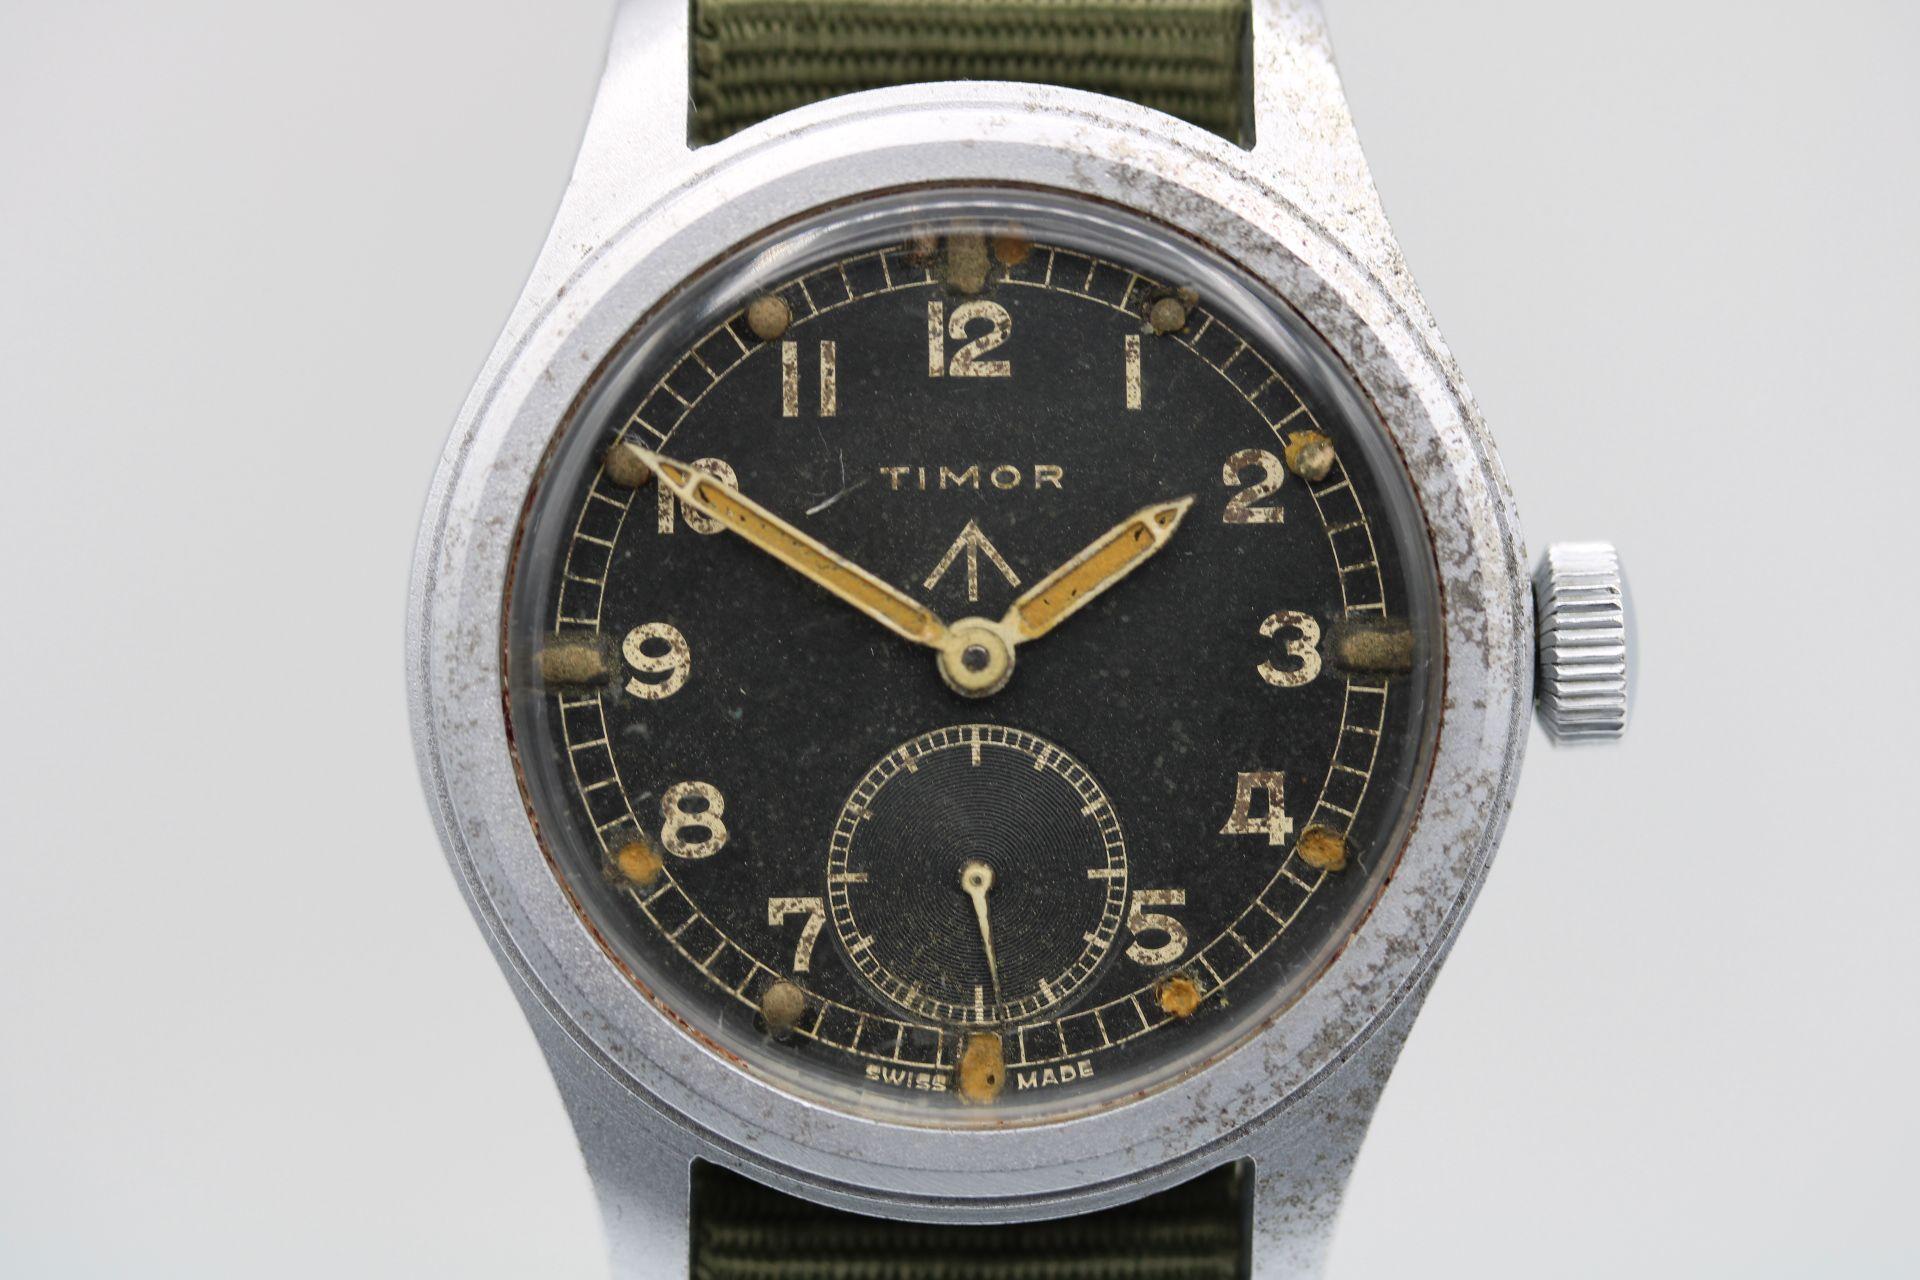 Elle fait partie des montres militaires britanniques de la Seconde Guerre mondiale, appelées 